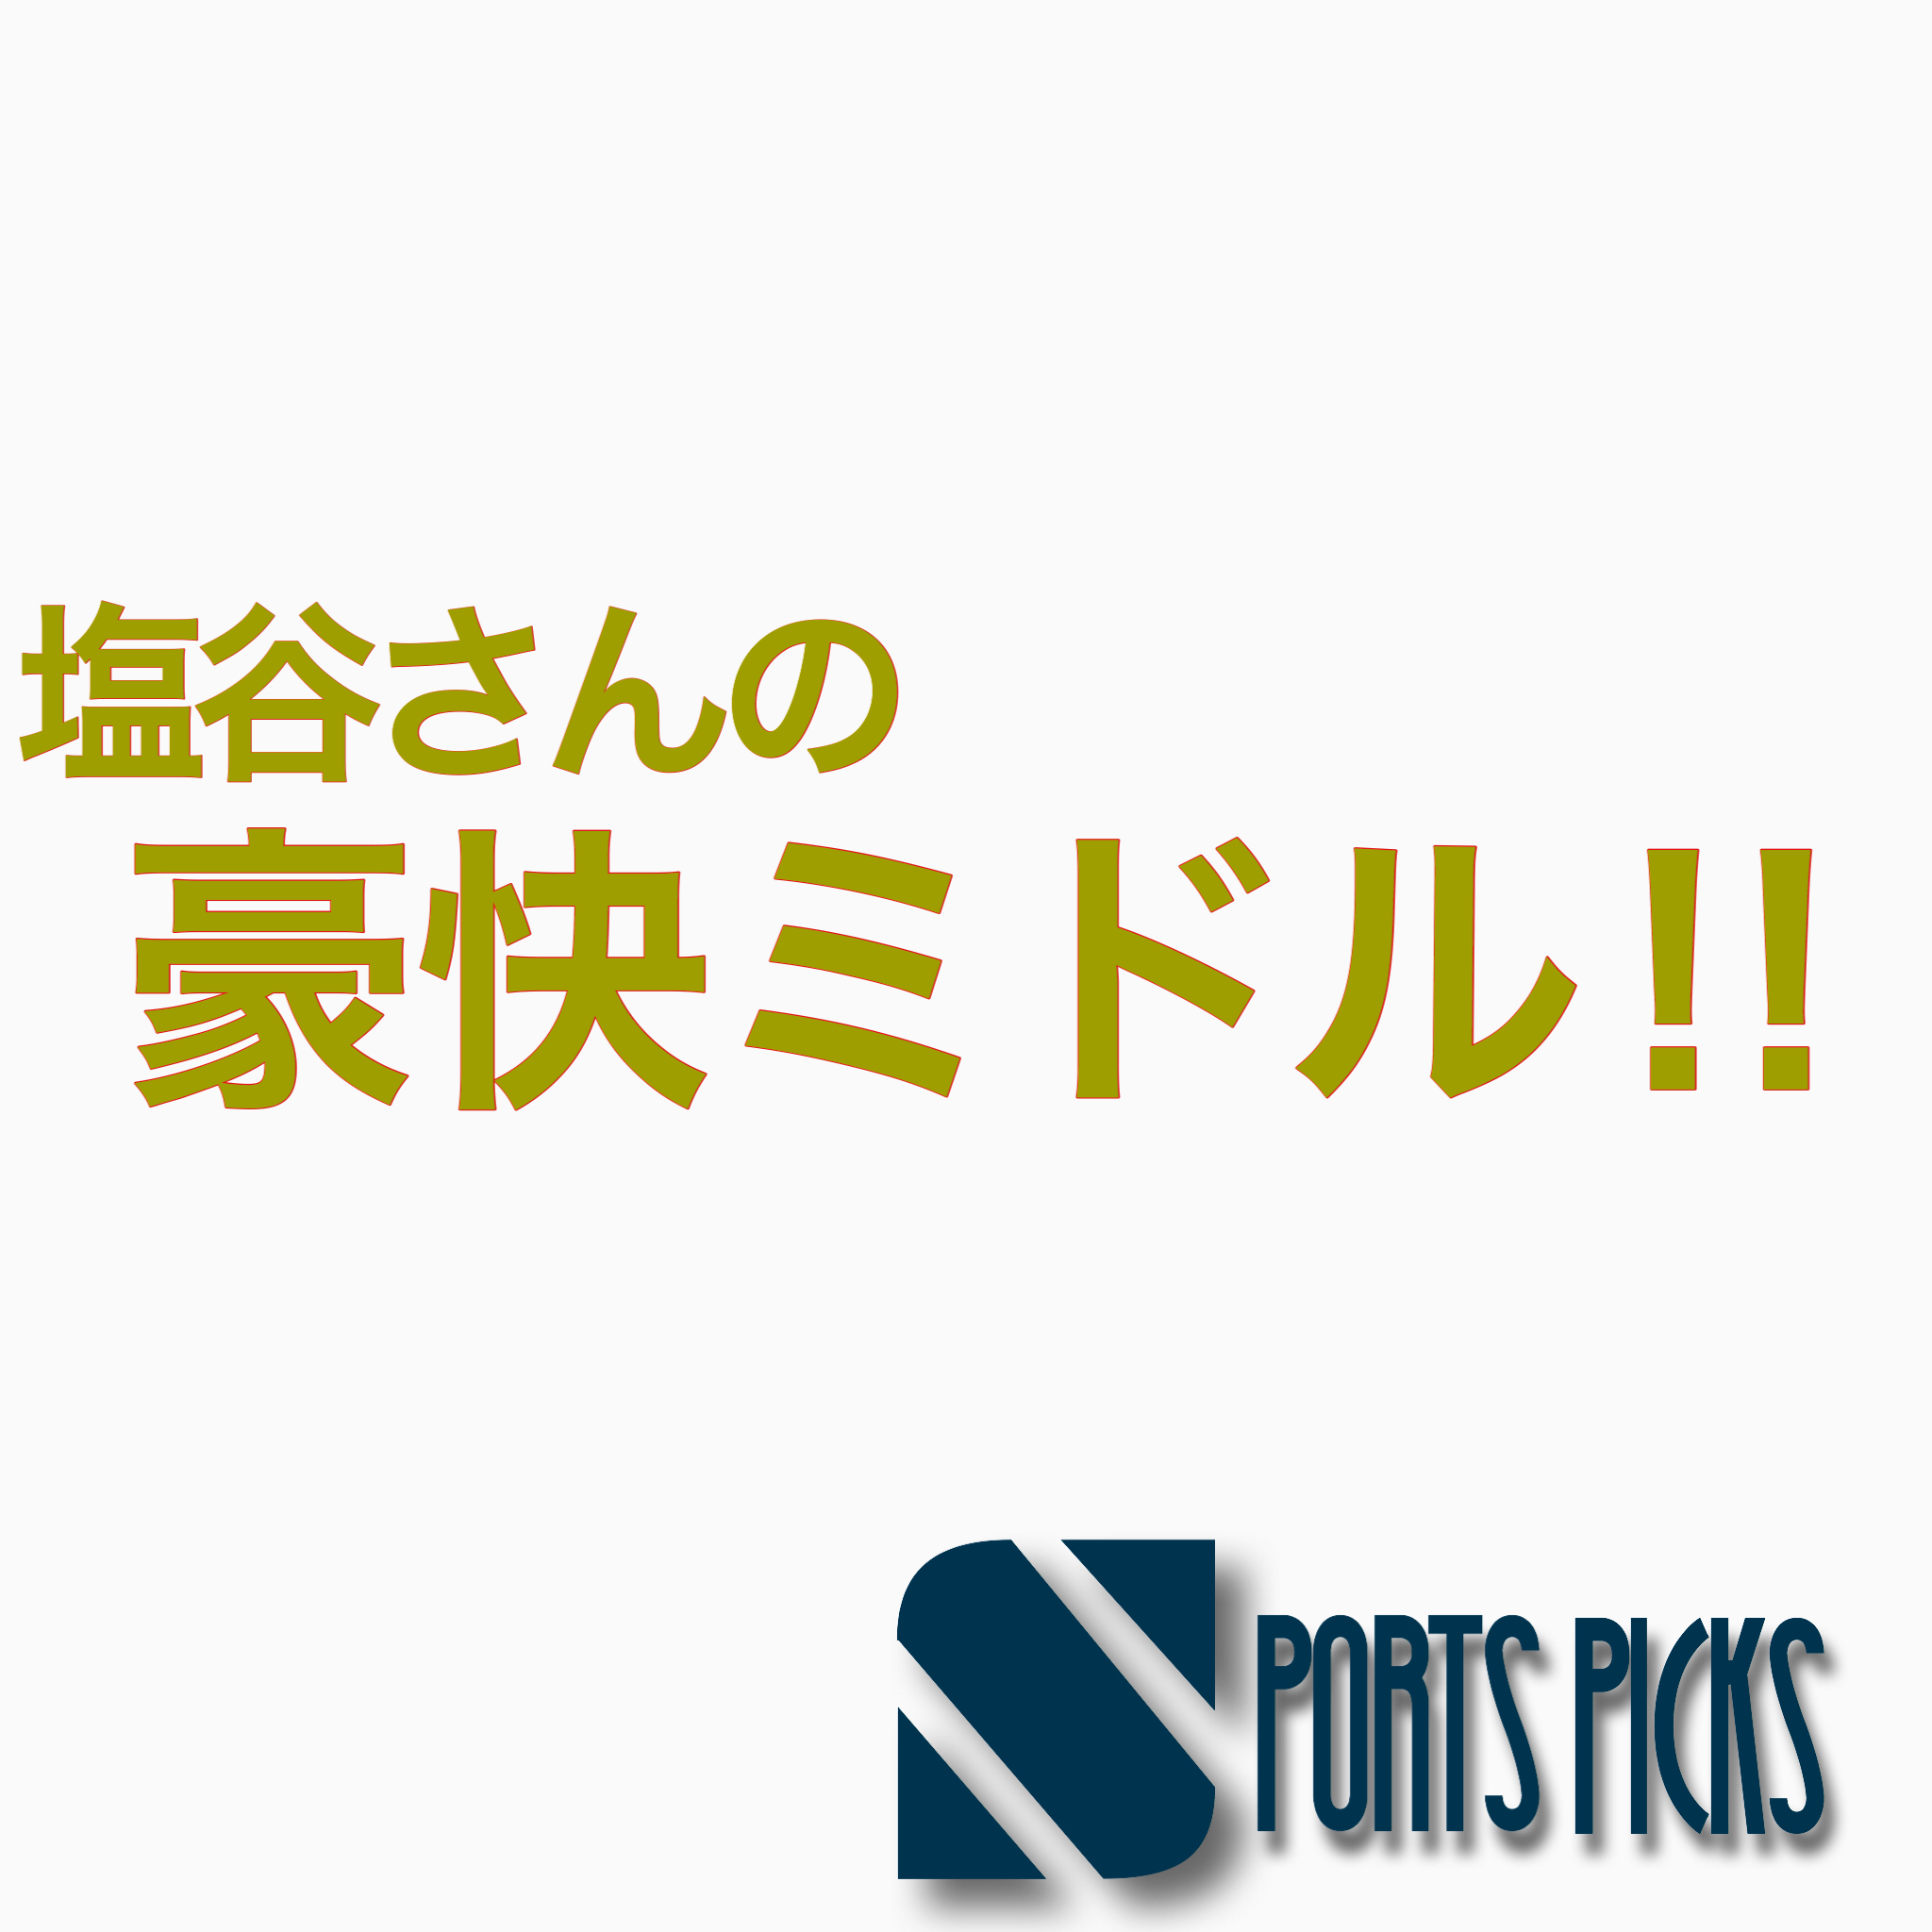 原口元気 日本代表の評価は ポジション プレースタイルをpickup Spoblo Players File